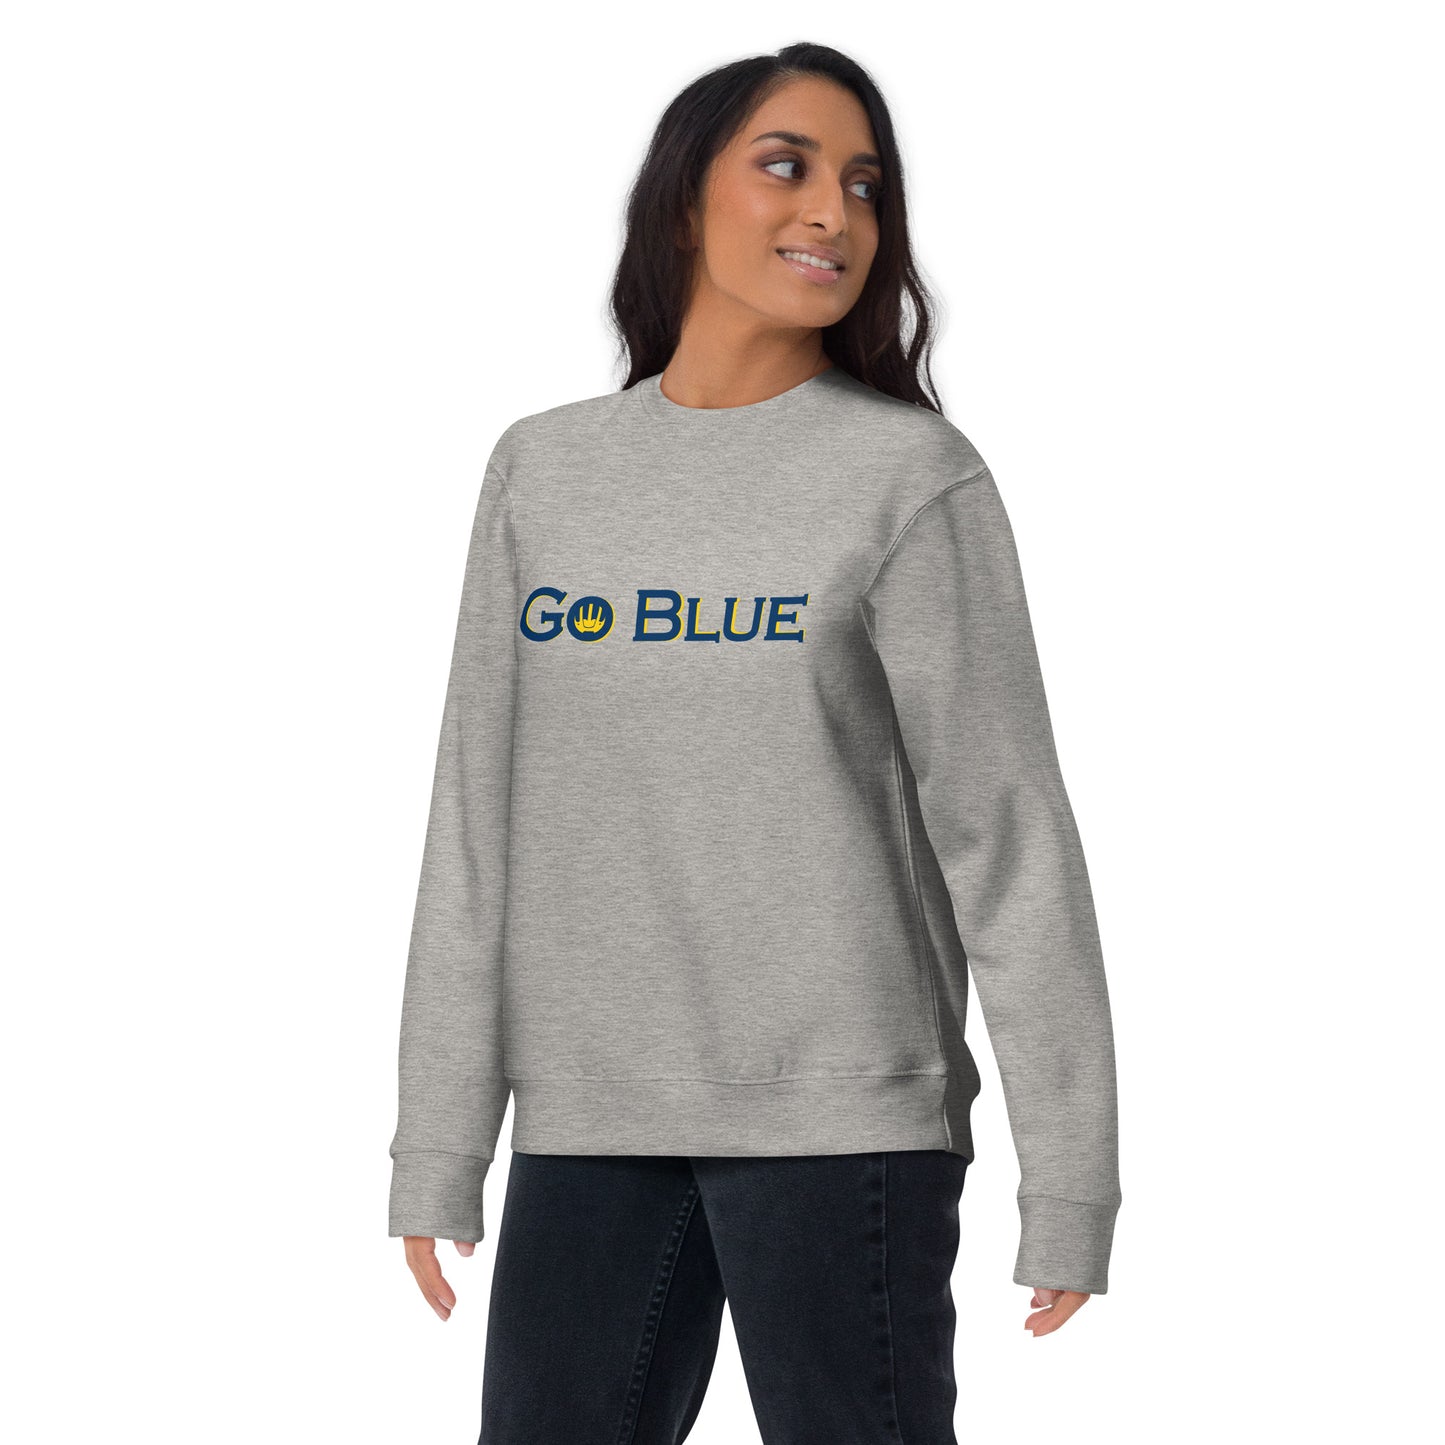 Go Blue Unisex Premium Sweatshirt